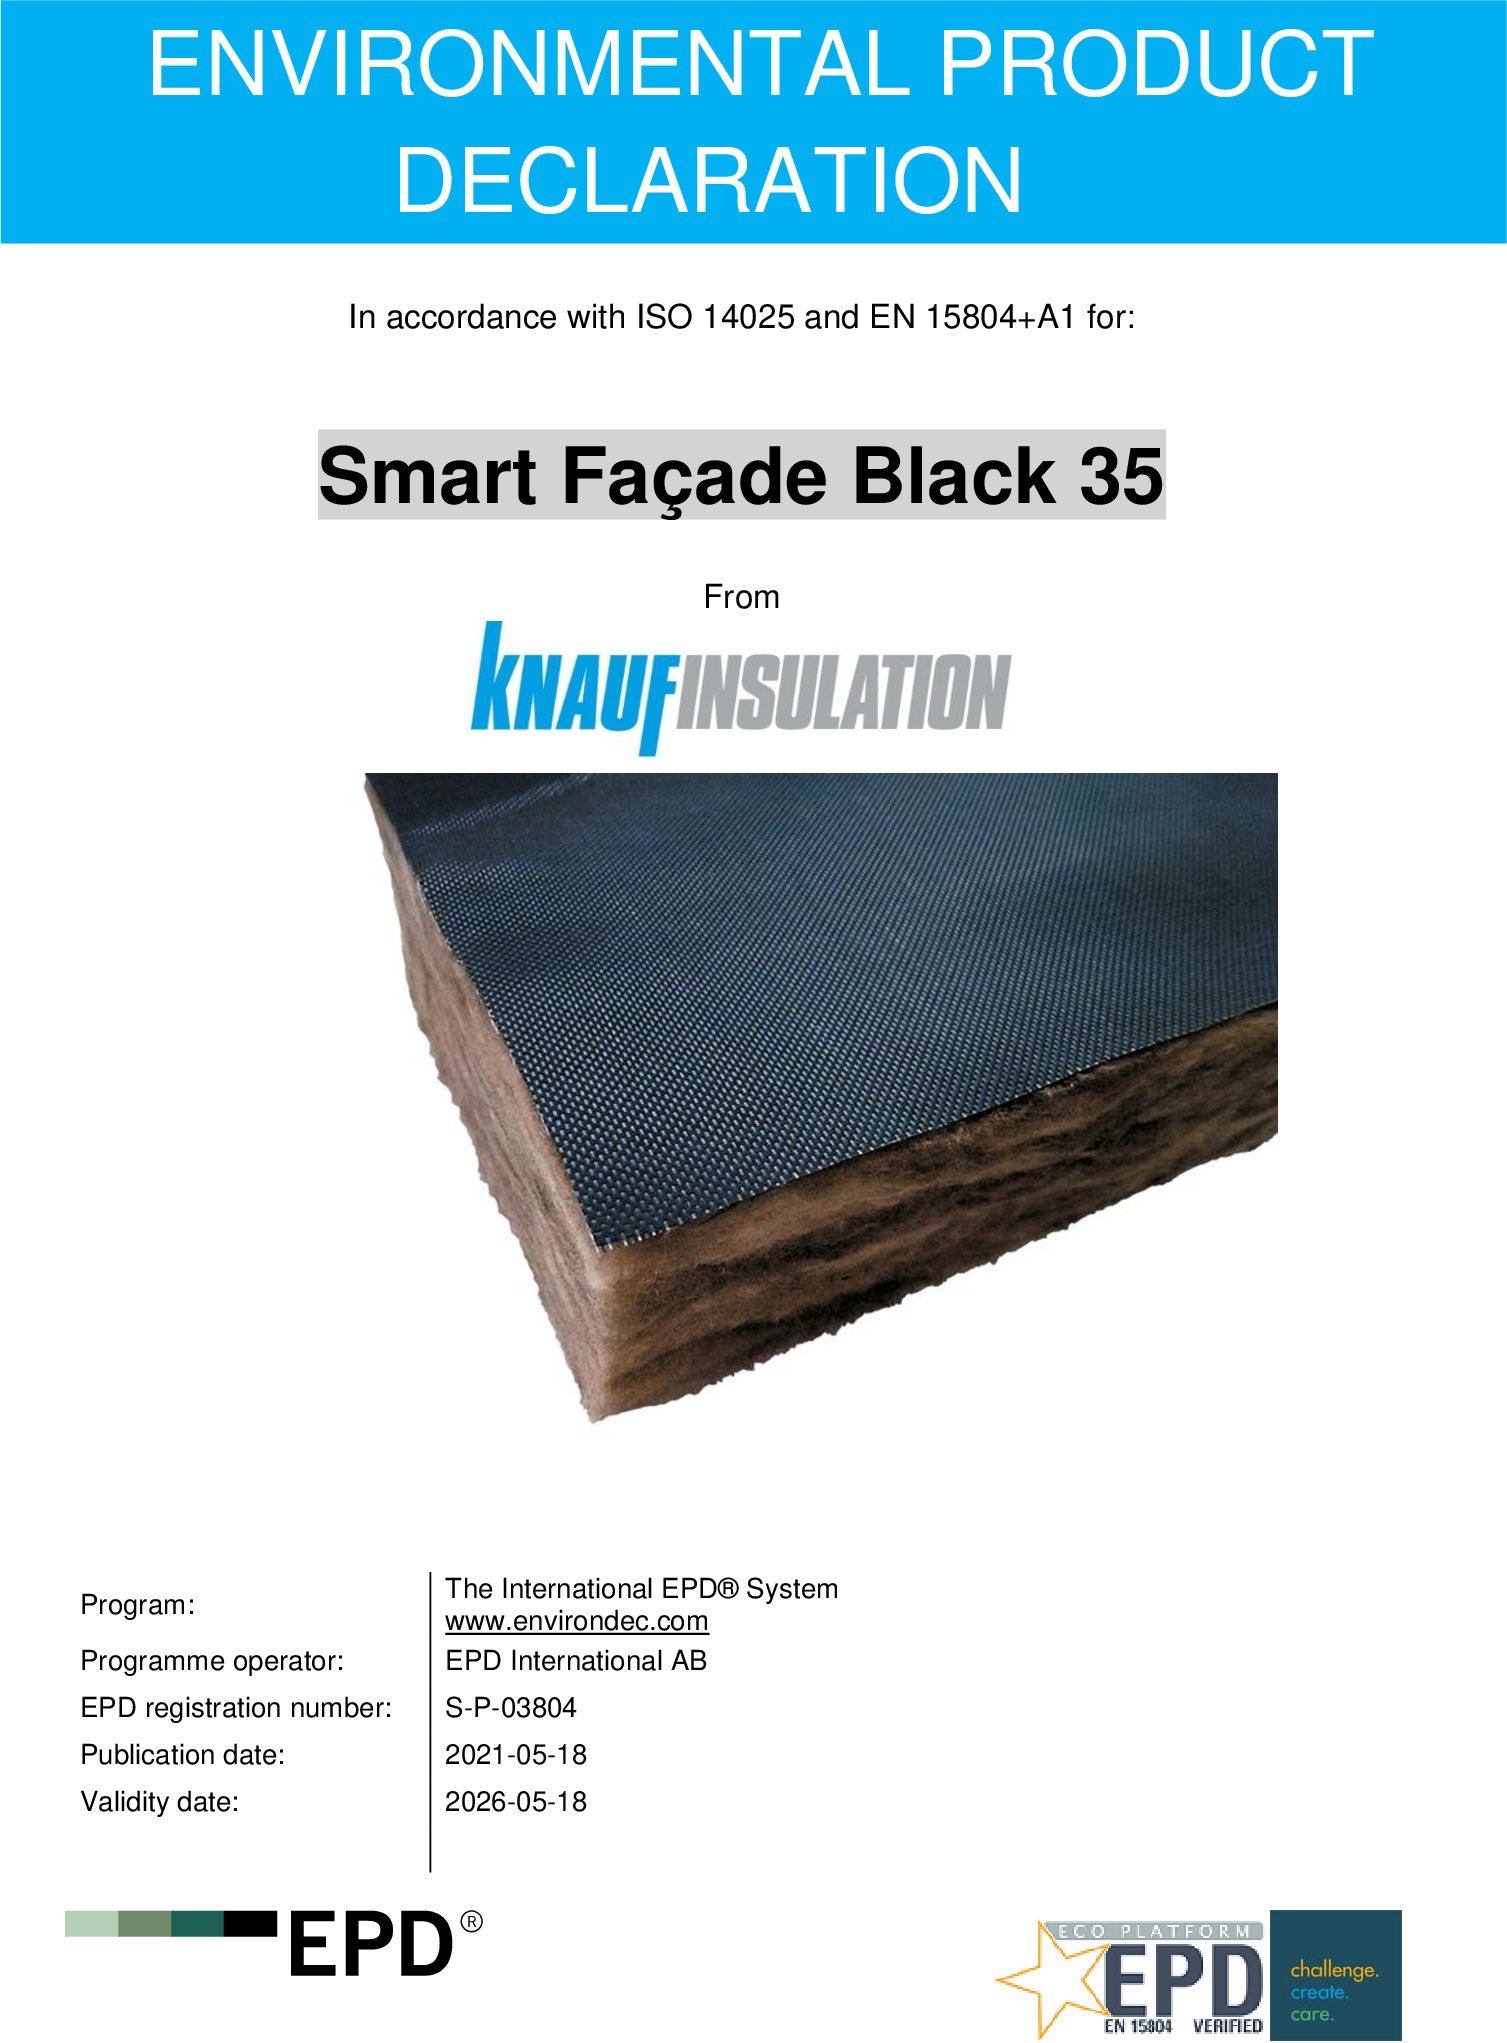 Smart Façade Black 35